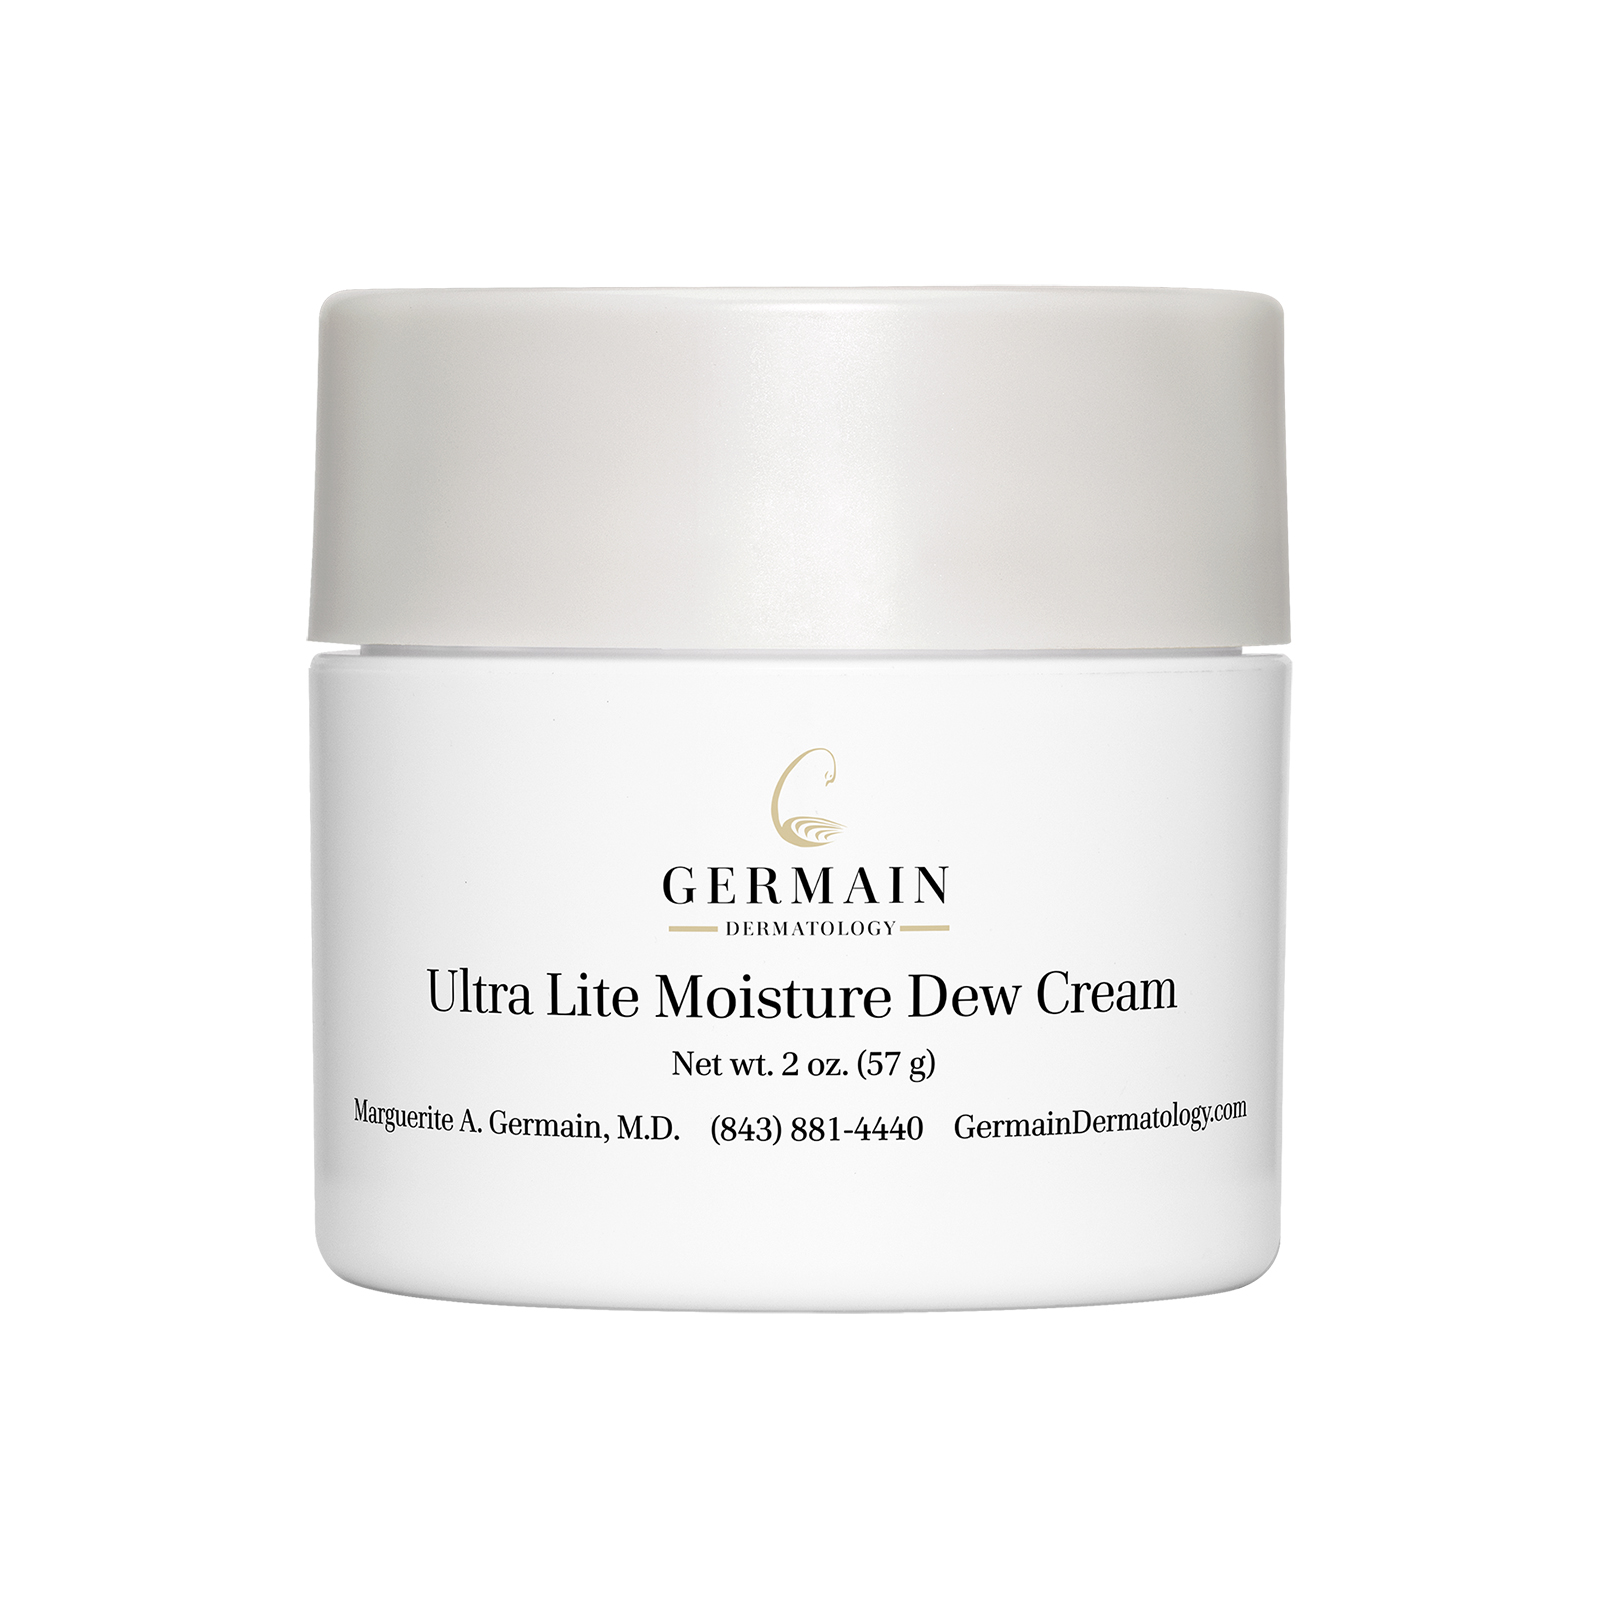 Ultra Lite Moisture Dew Cream – Germain Dermatology